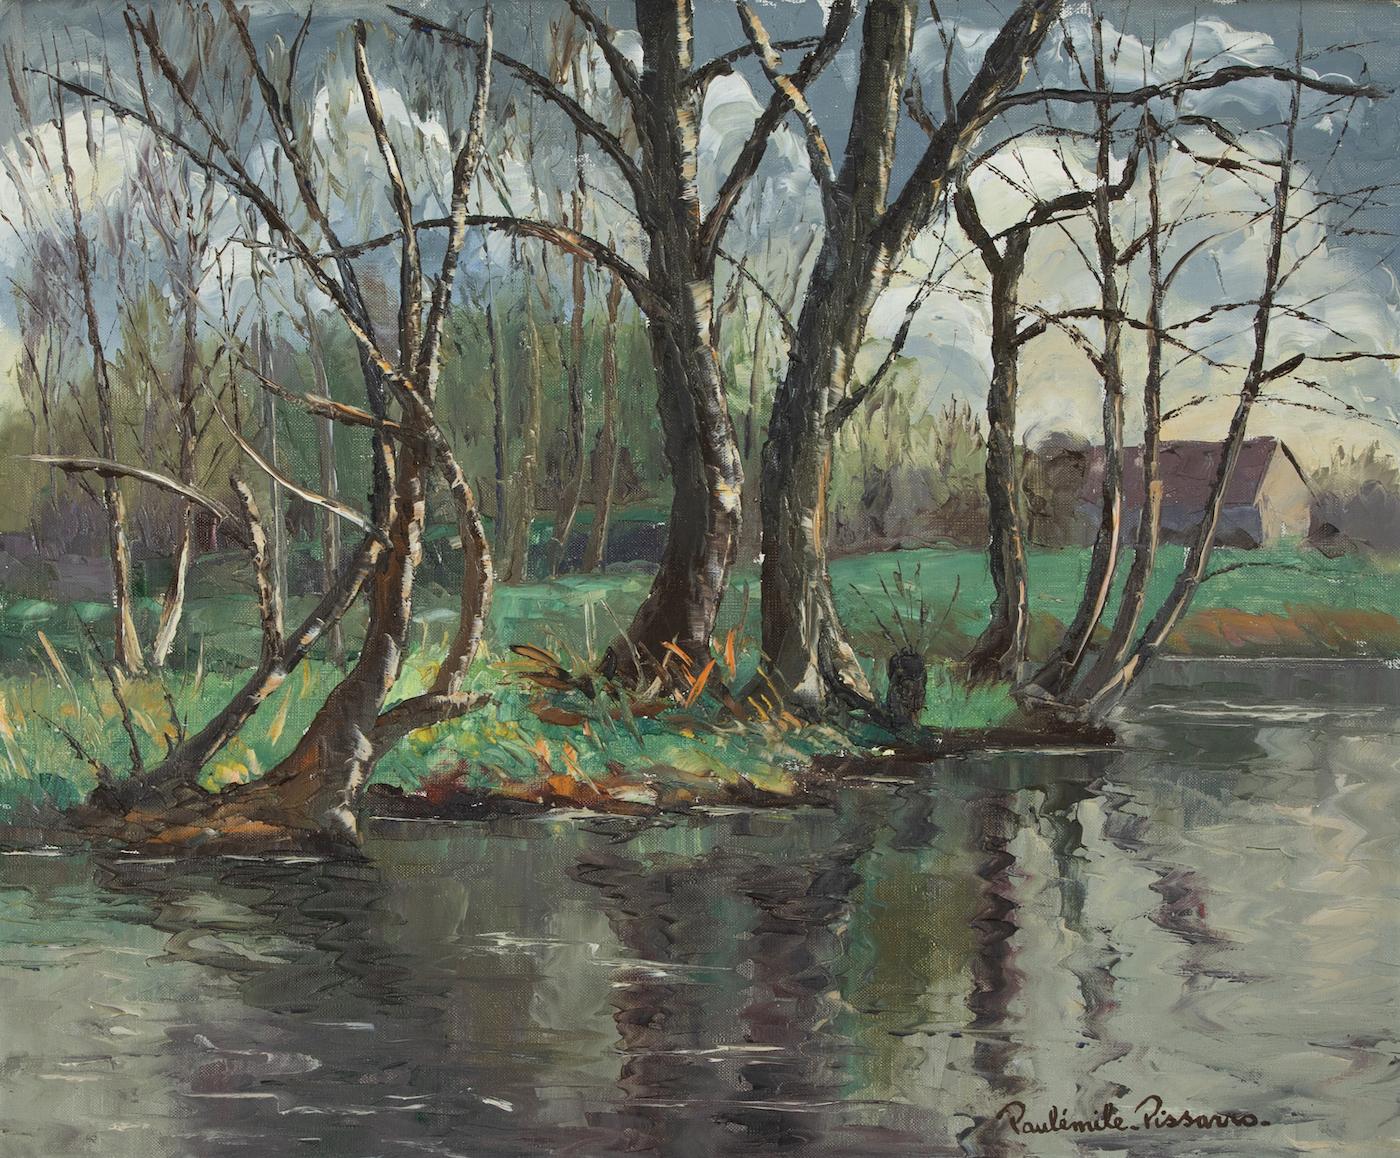 Les Iles à Cantepie by Paulémile Pissarro - River scene painting